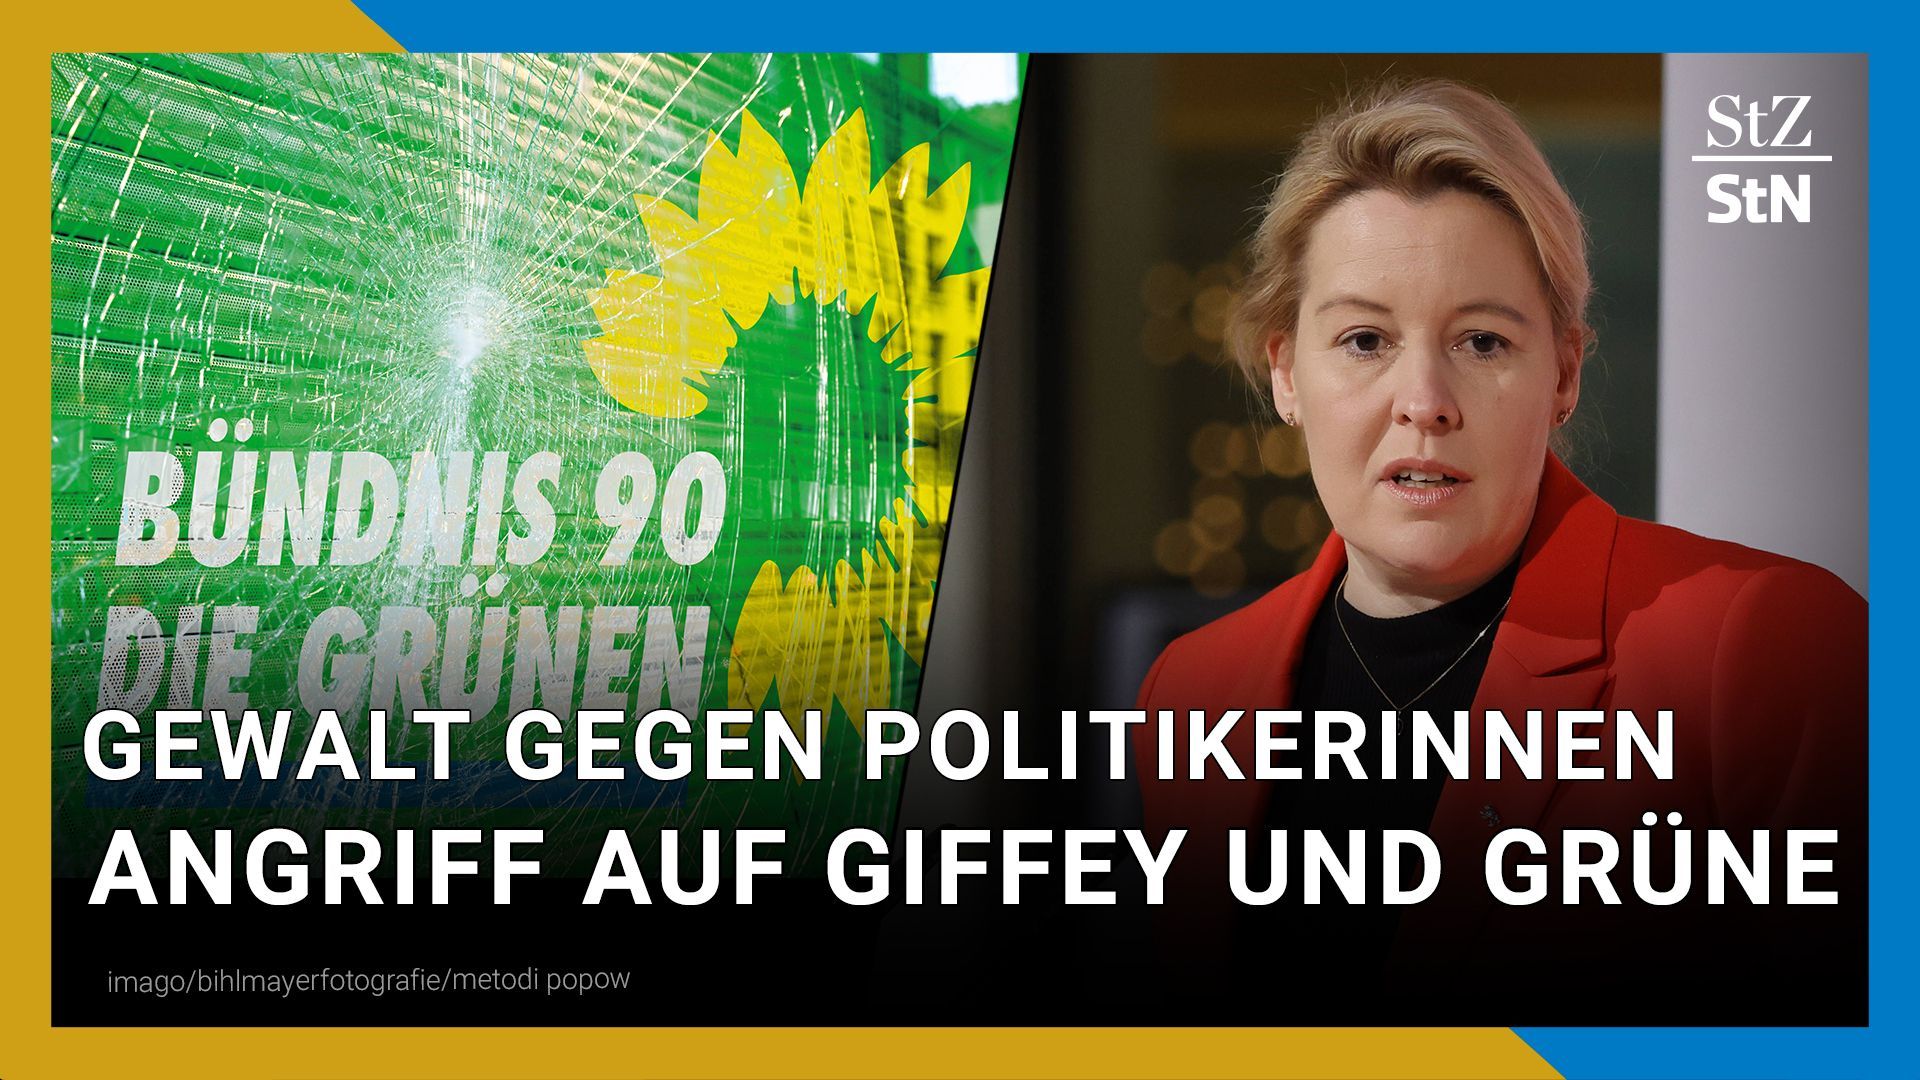 Berlin: Giffey bei tätlichem Angriff verletzt | Gewalt gegen Grüne in Dresden